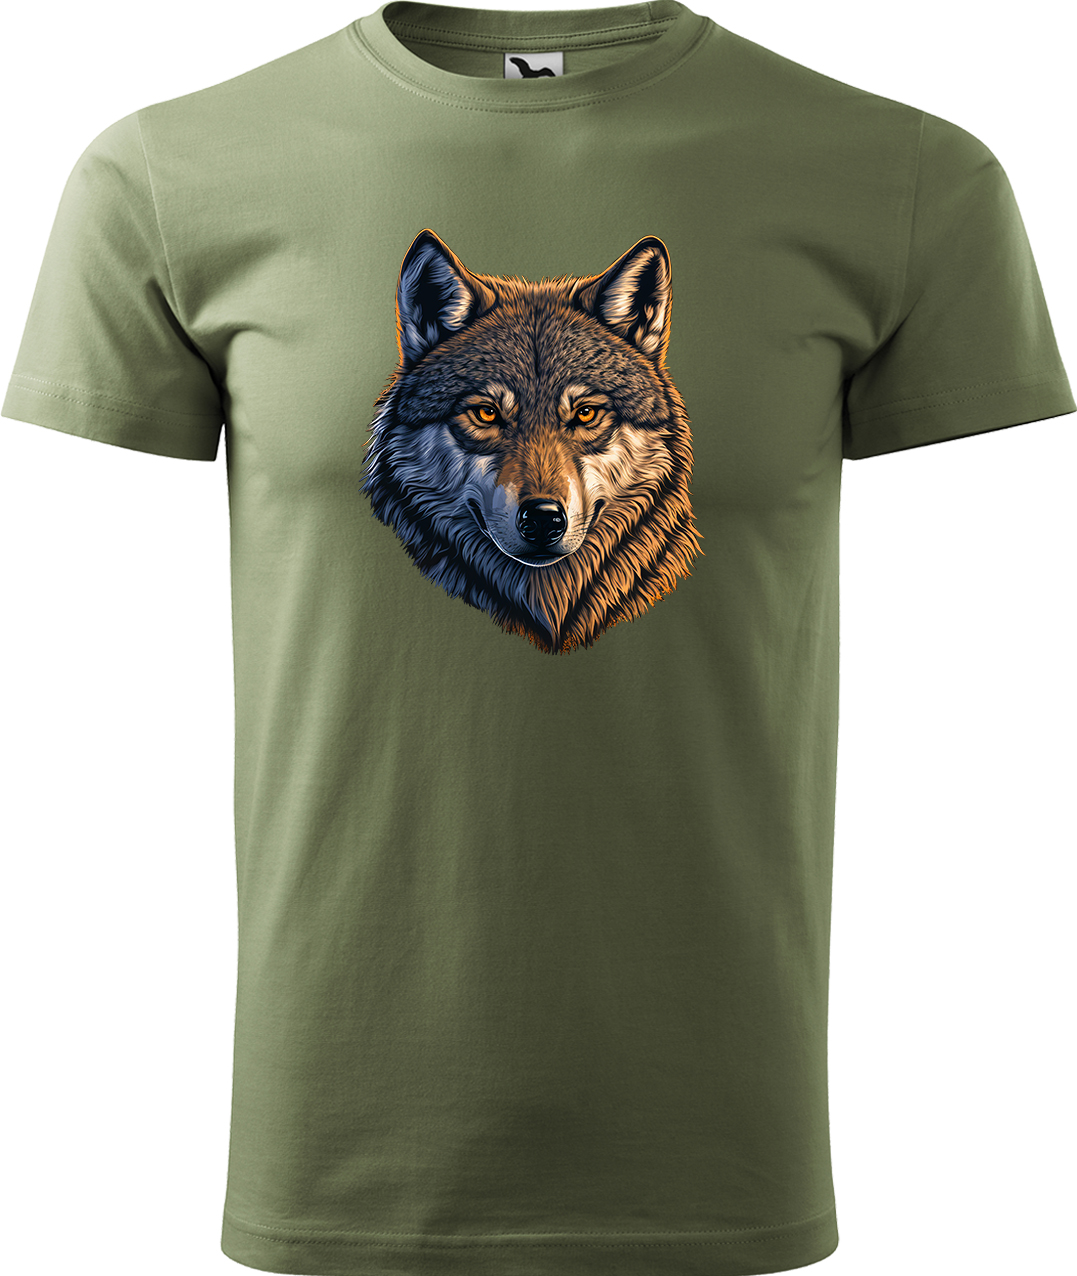 Pánské tričko s vlkem - Hlava vlka Velikost: XL, Barva: Světlá khaki (28), Střih: pánský